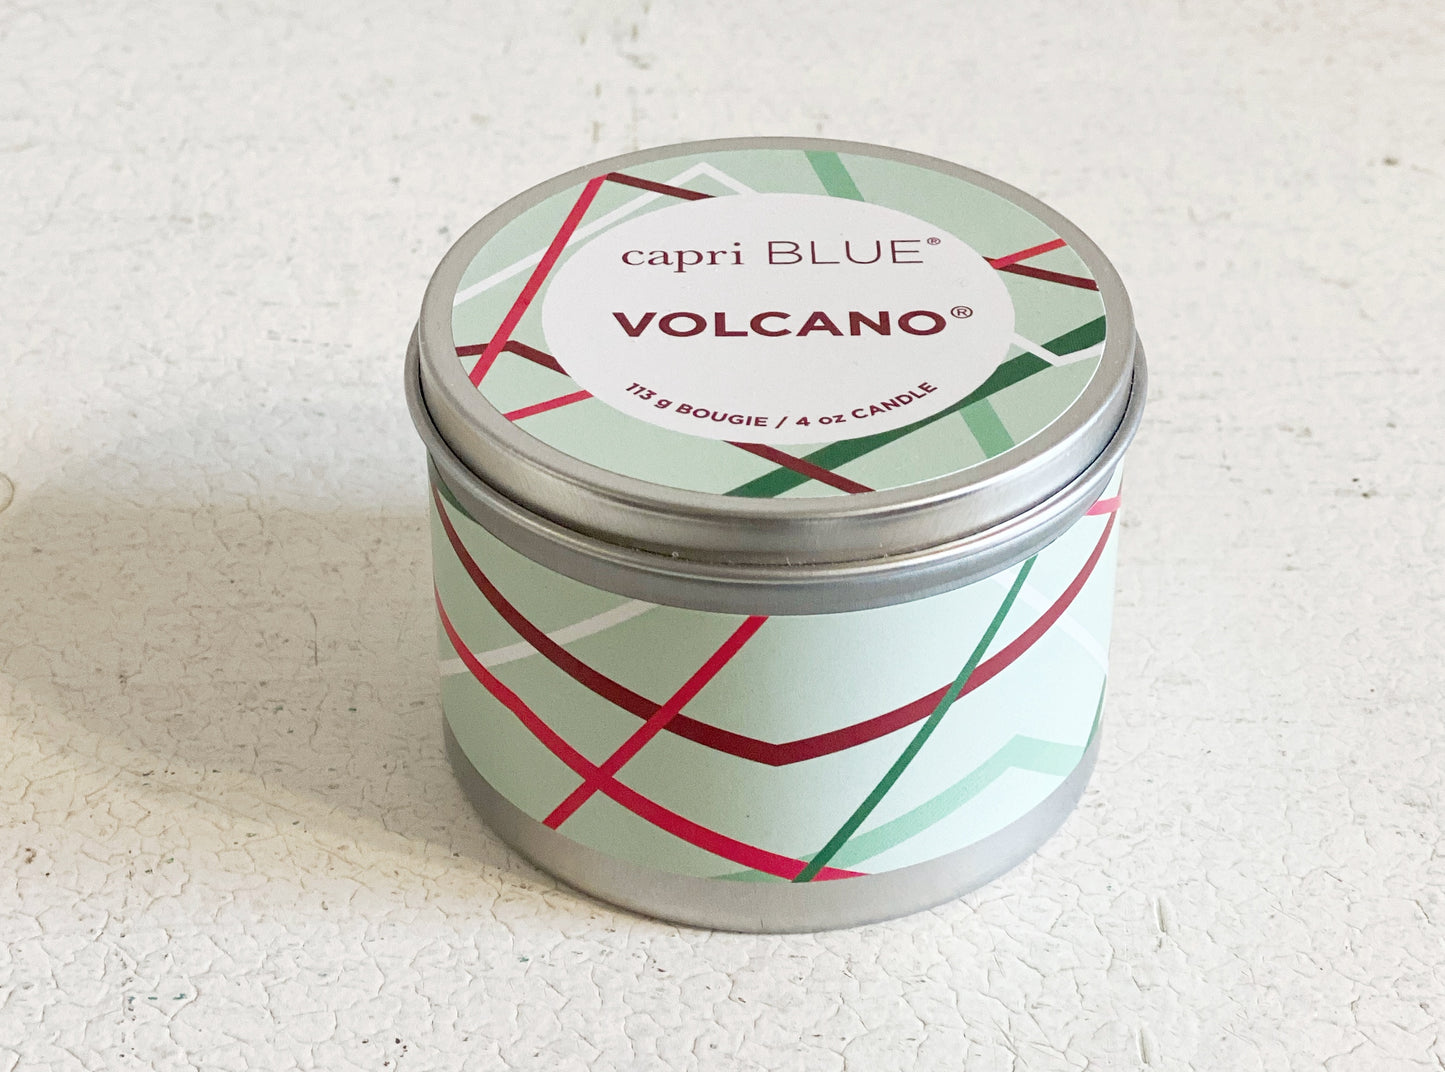 CapriBlue Volcano Holiday Mini Tin